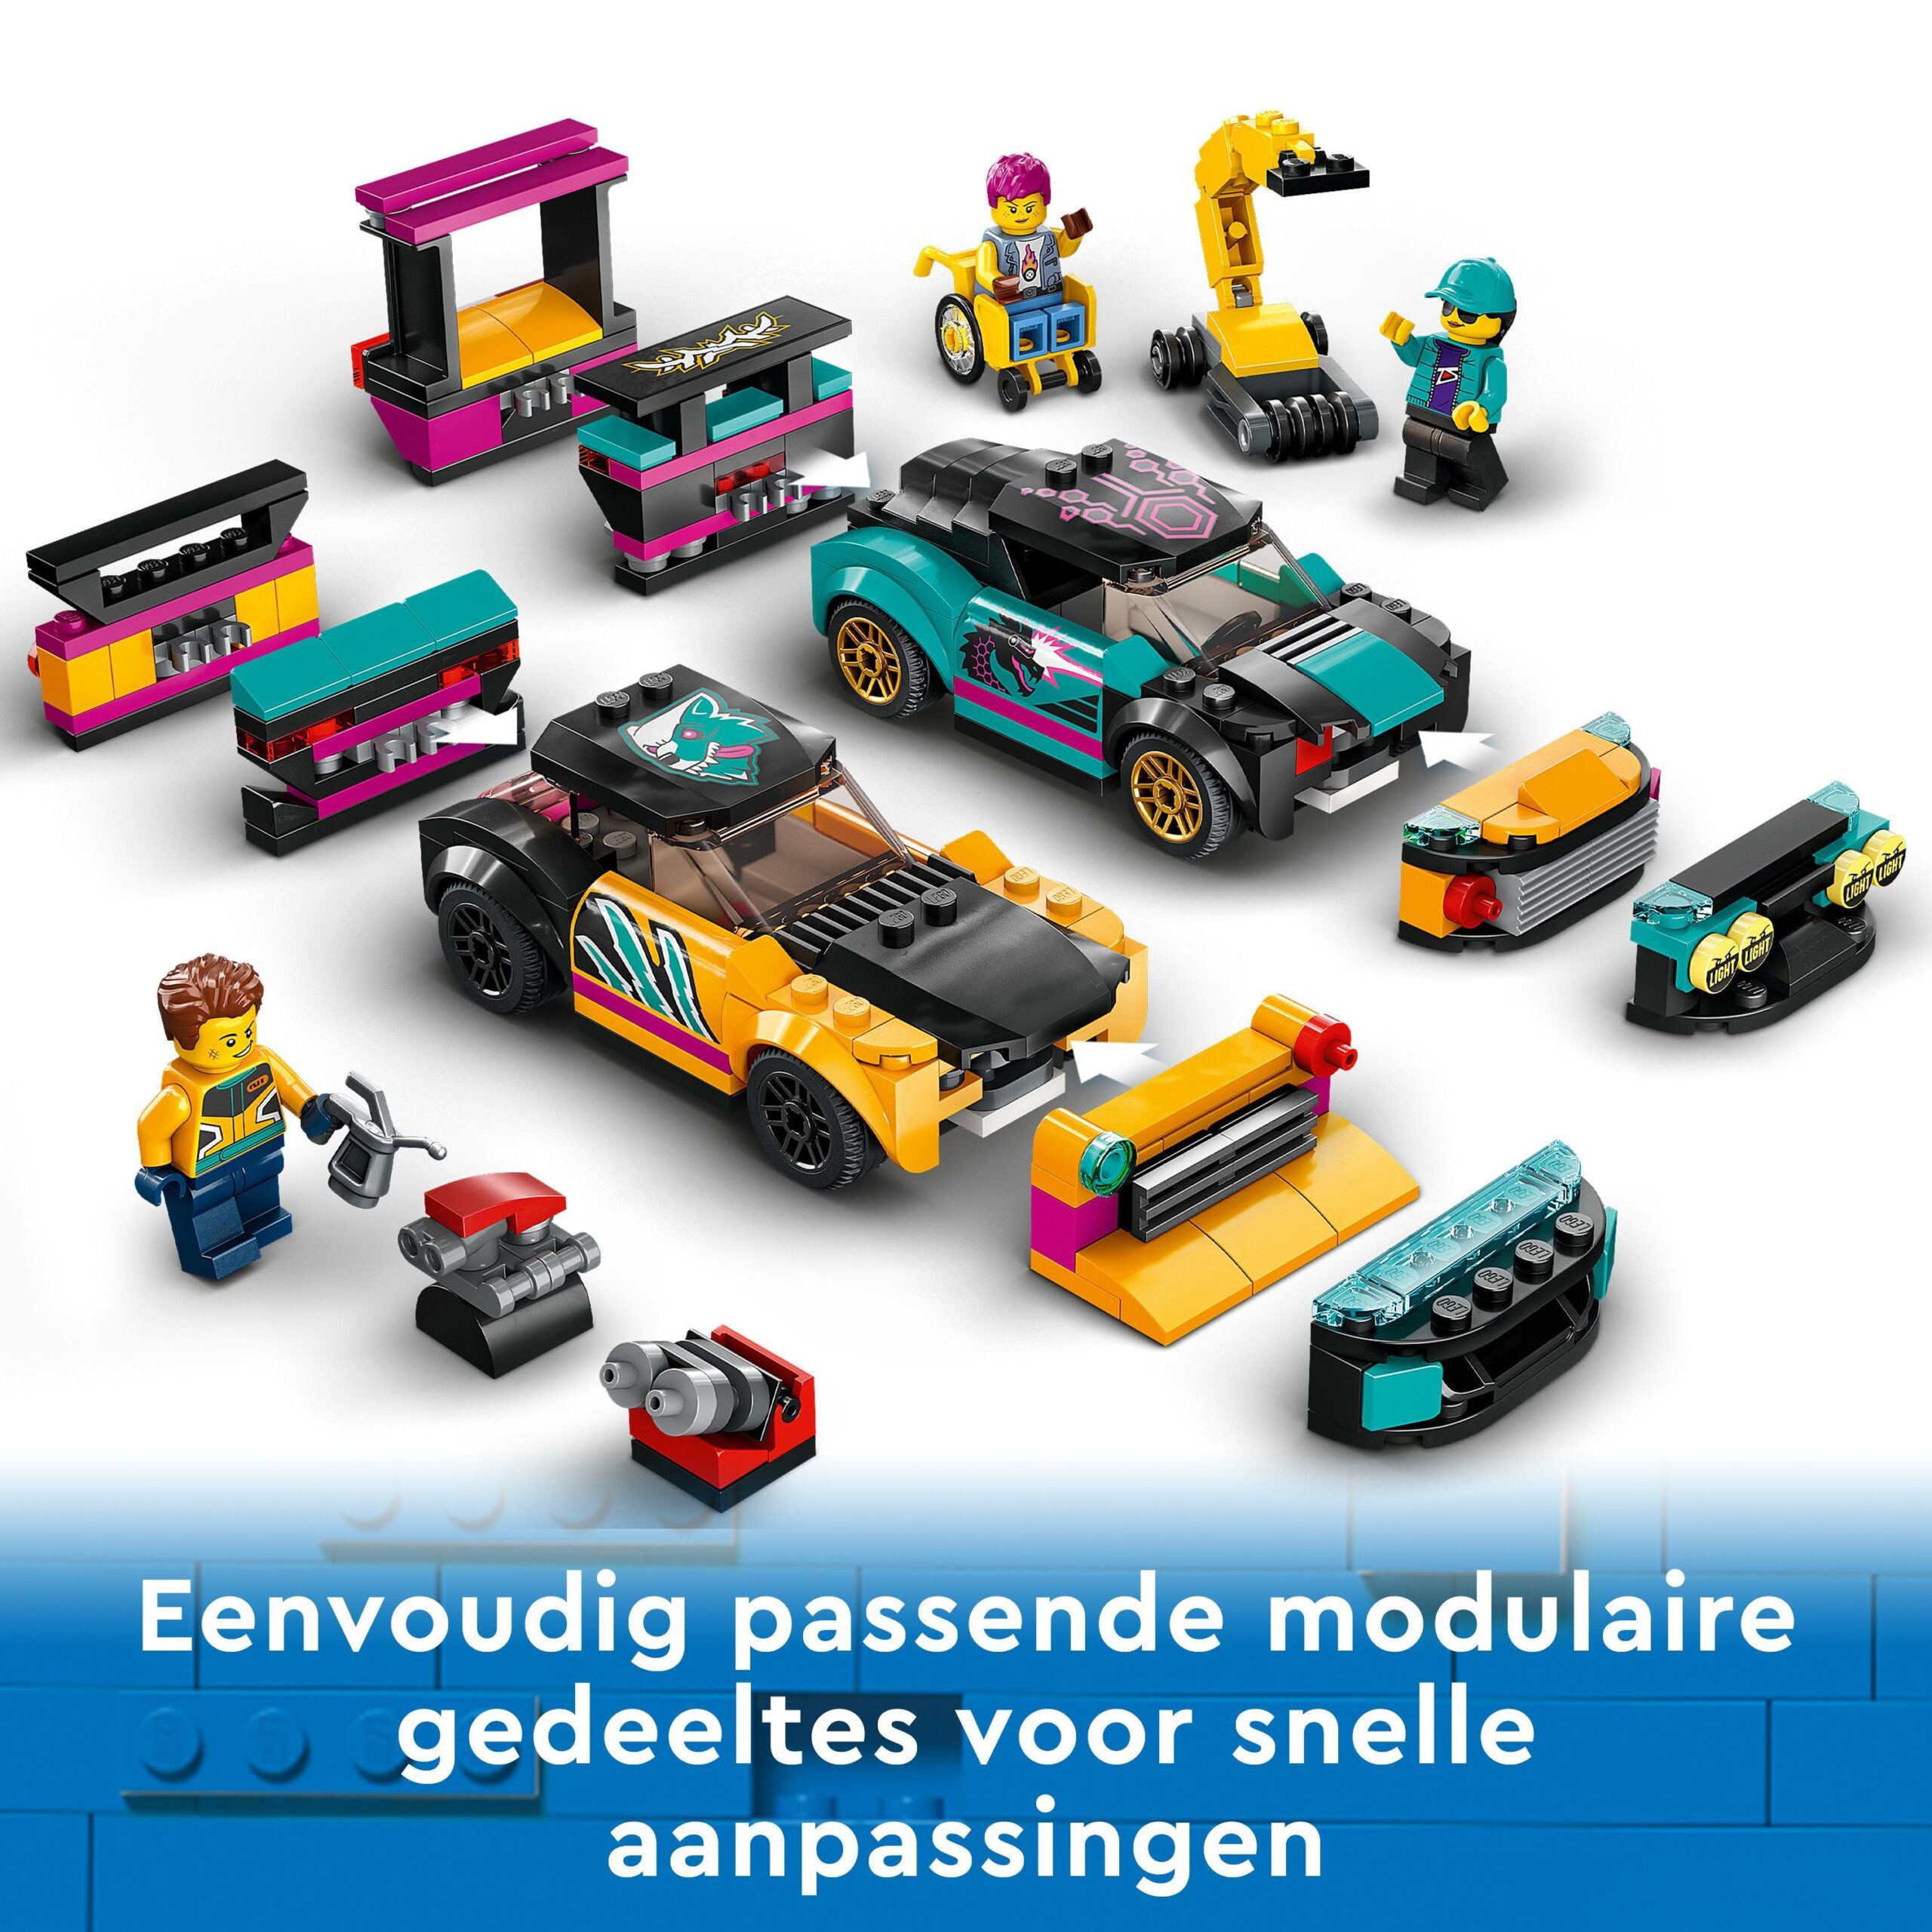 Lego city 60389 garage auto personalizzato con 2 macchine